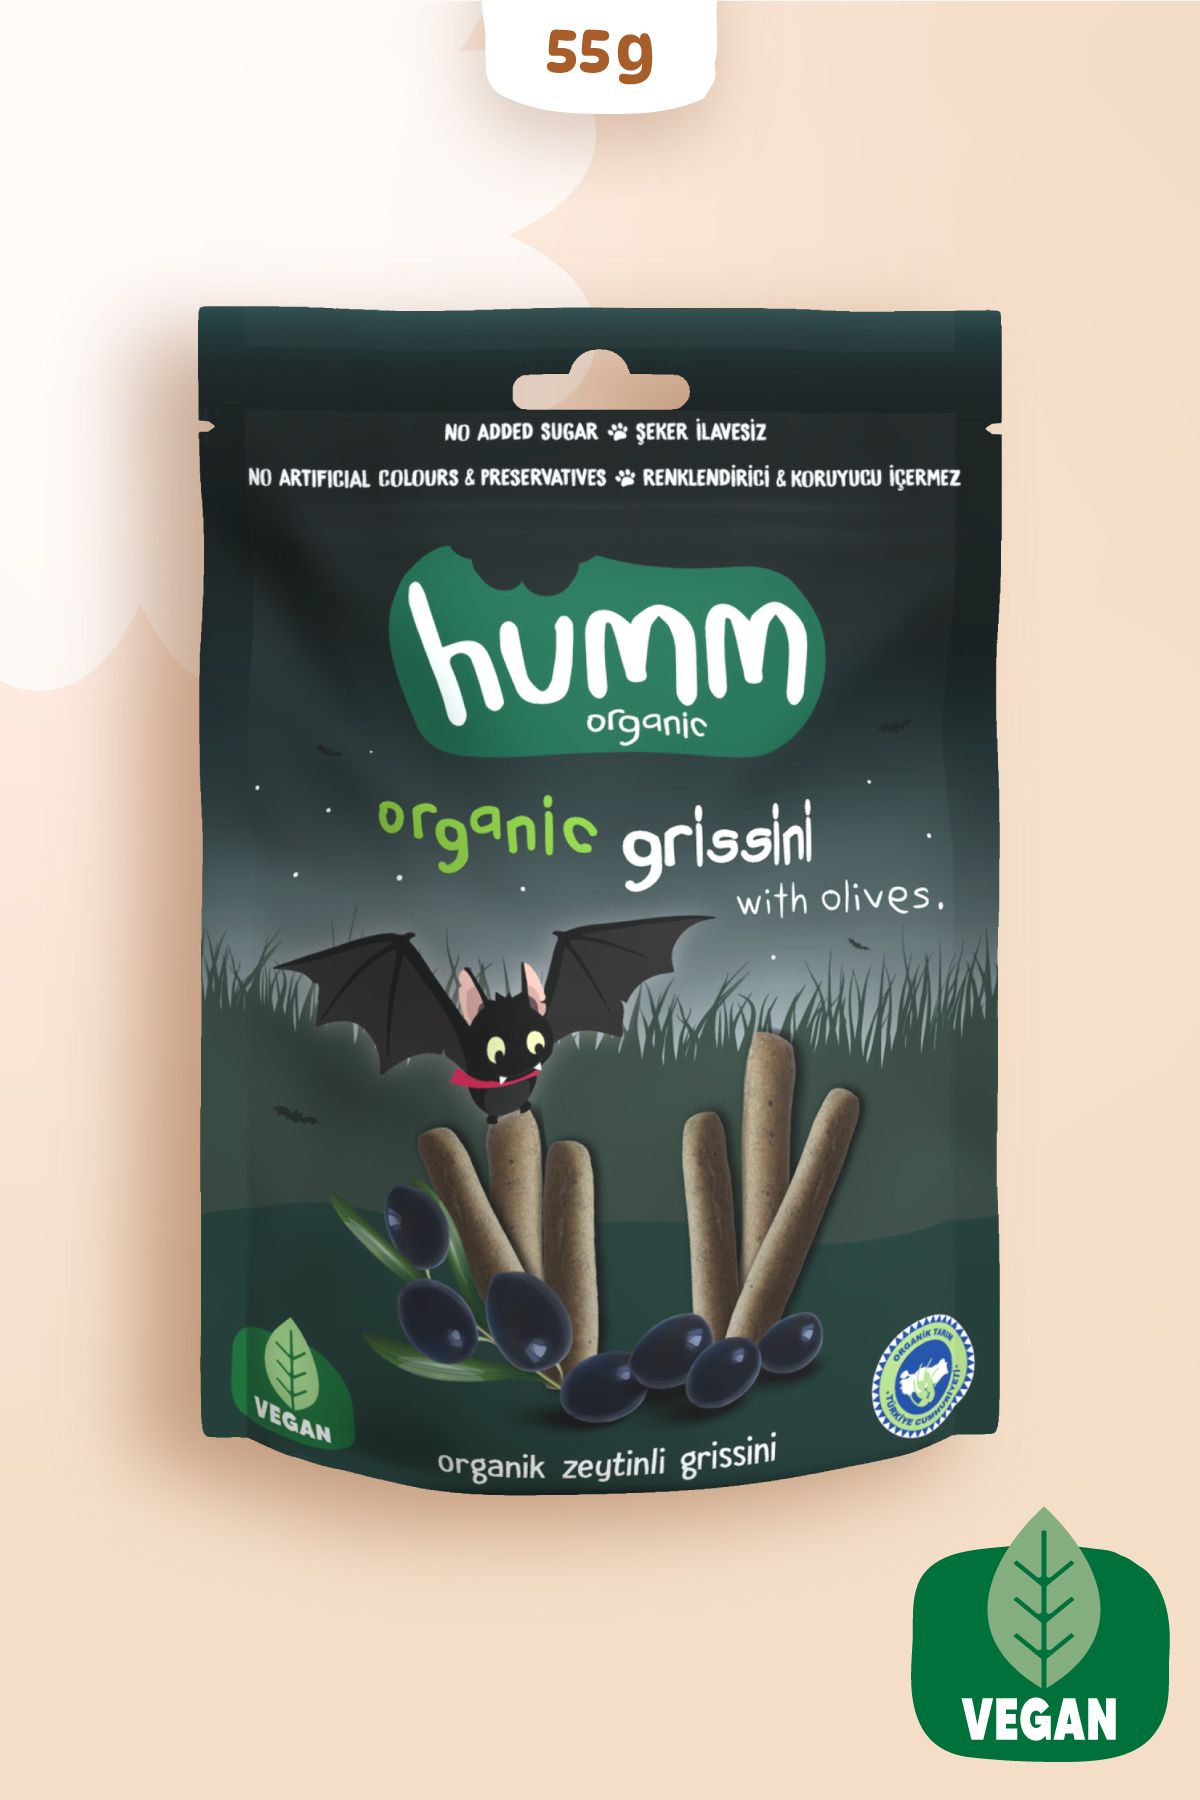 Humm Organic Organik Vegan Zeytinli Grissini - 55g